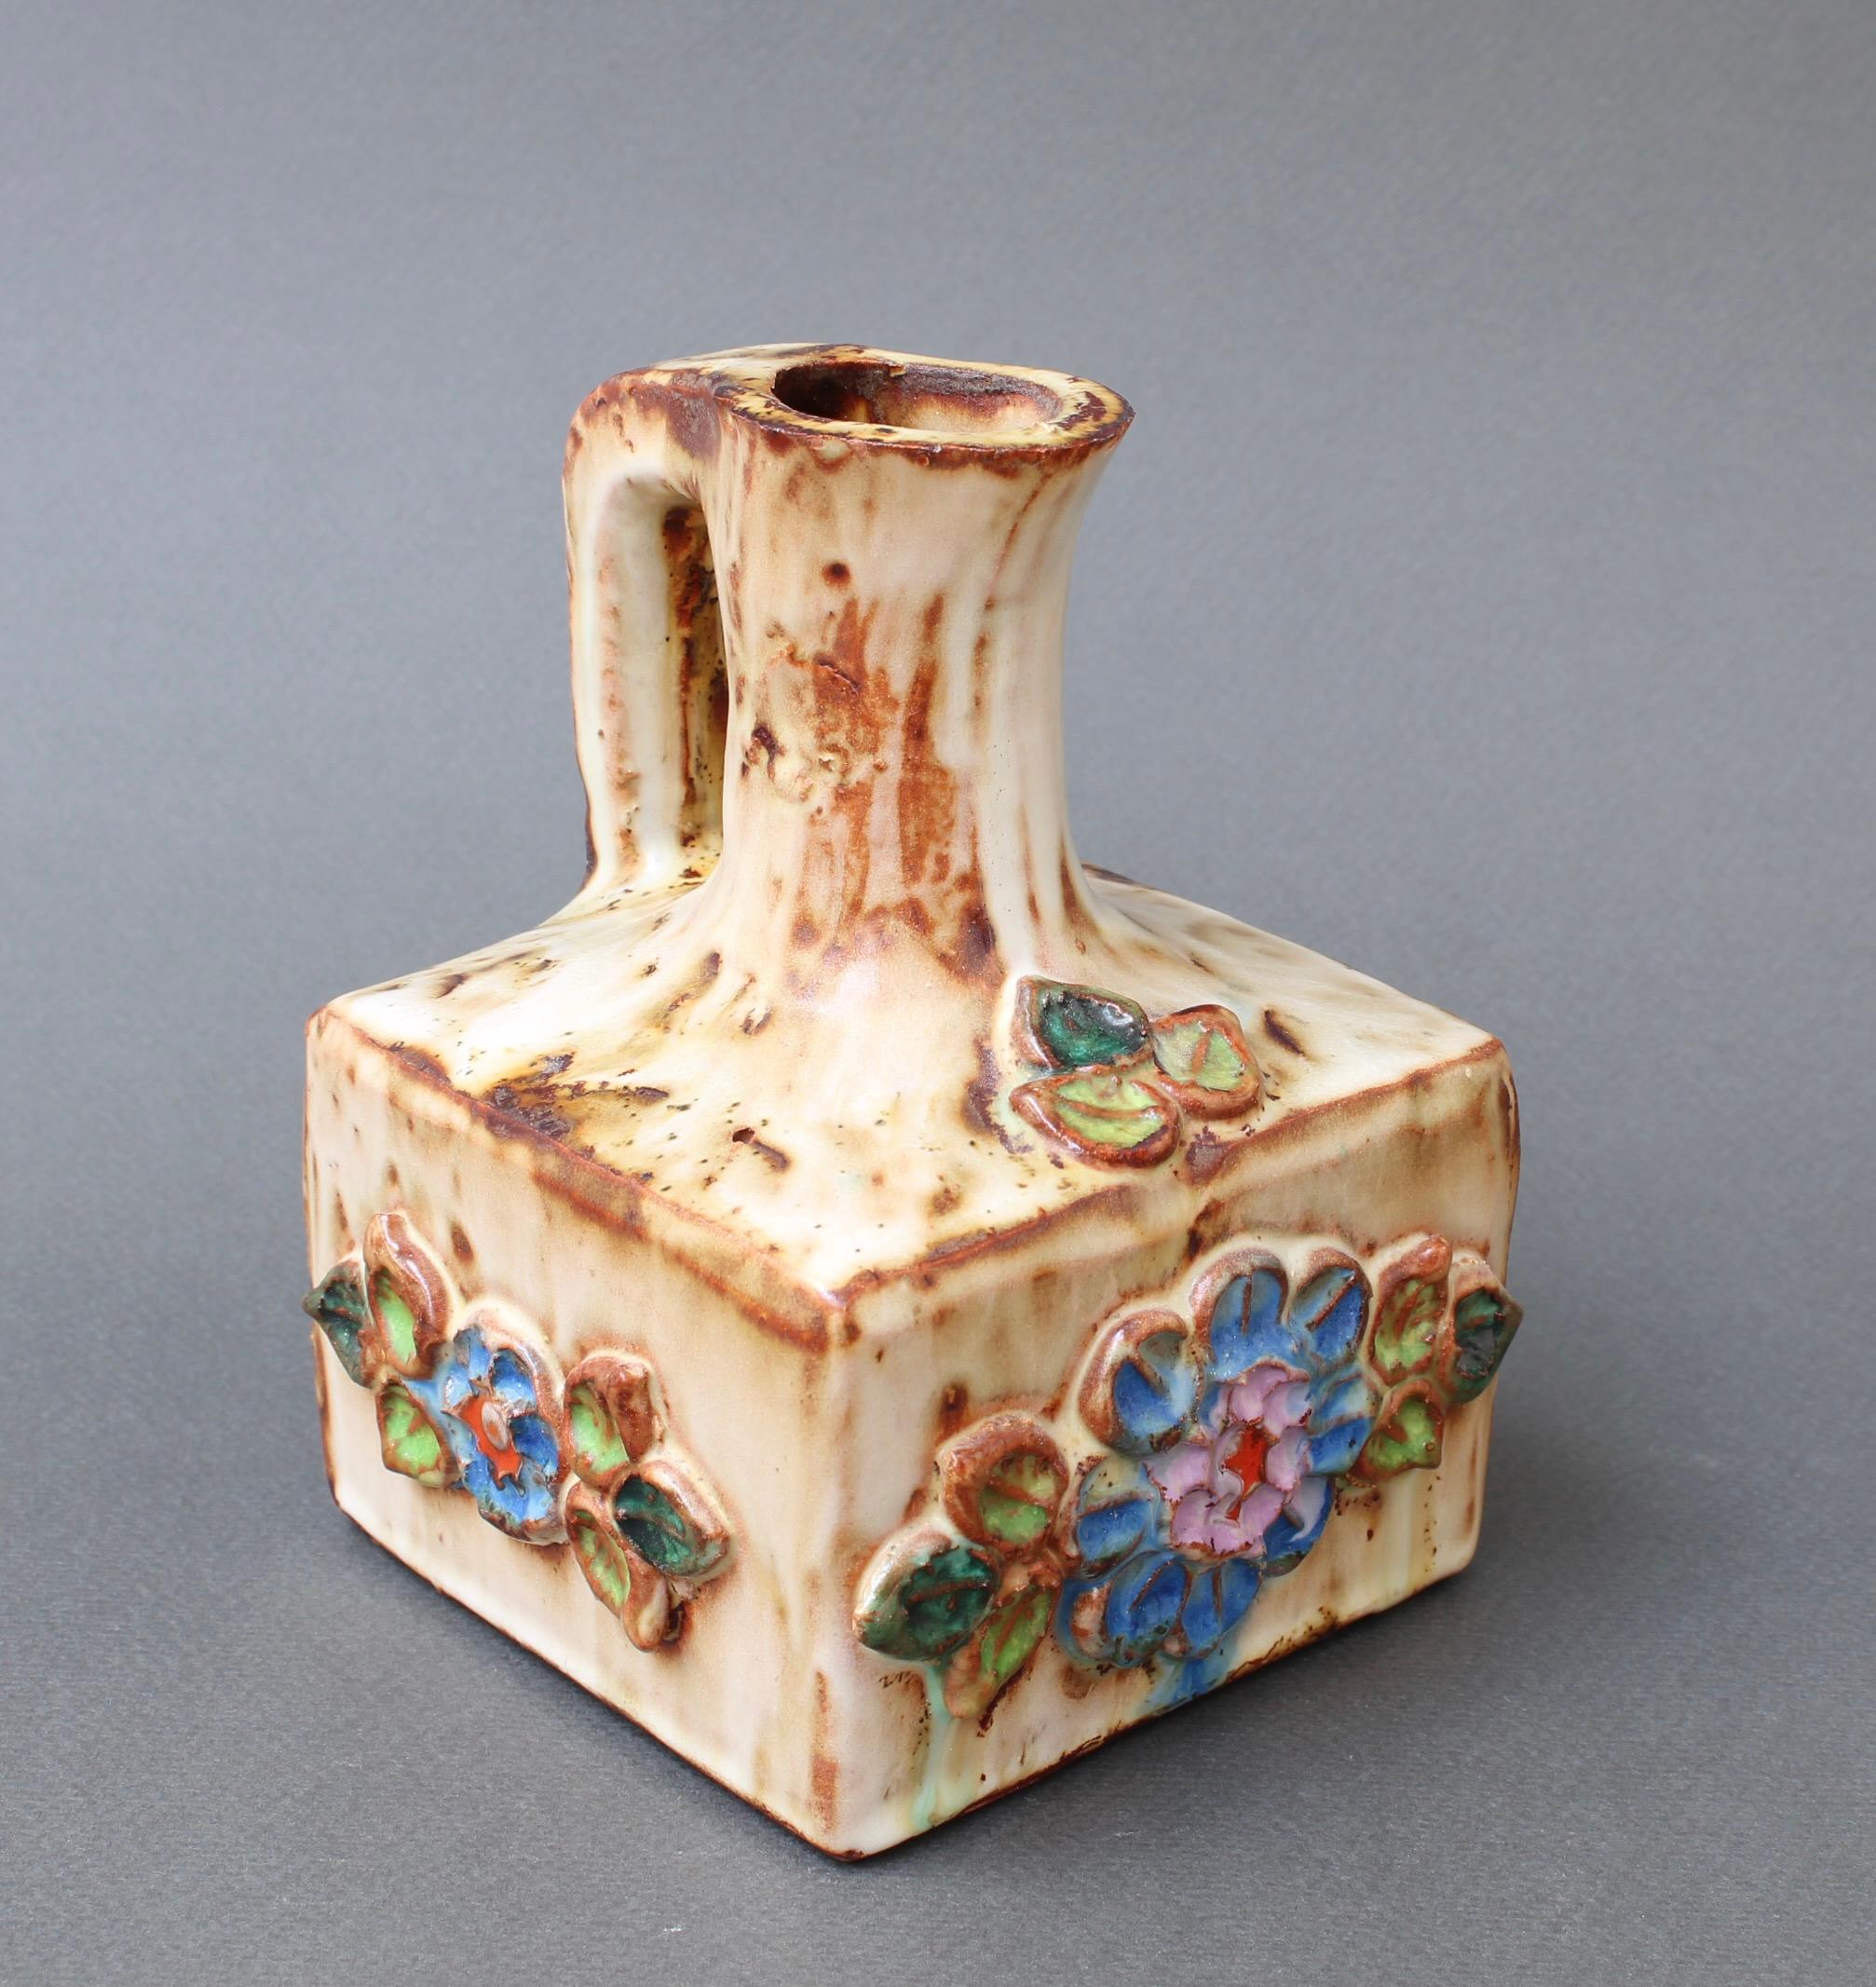 Brocca vintage in ceramica a motivi floreali di La Roue, Vallauris, Francia (circa anni '60). Un affascinante pezzo decorativo con dettagli rustici e colorati. La ceramica è di piccole dimensioni con una base quadrata. In buone condizioni generali.